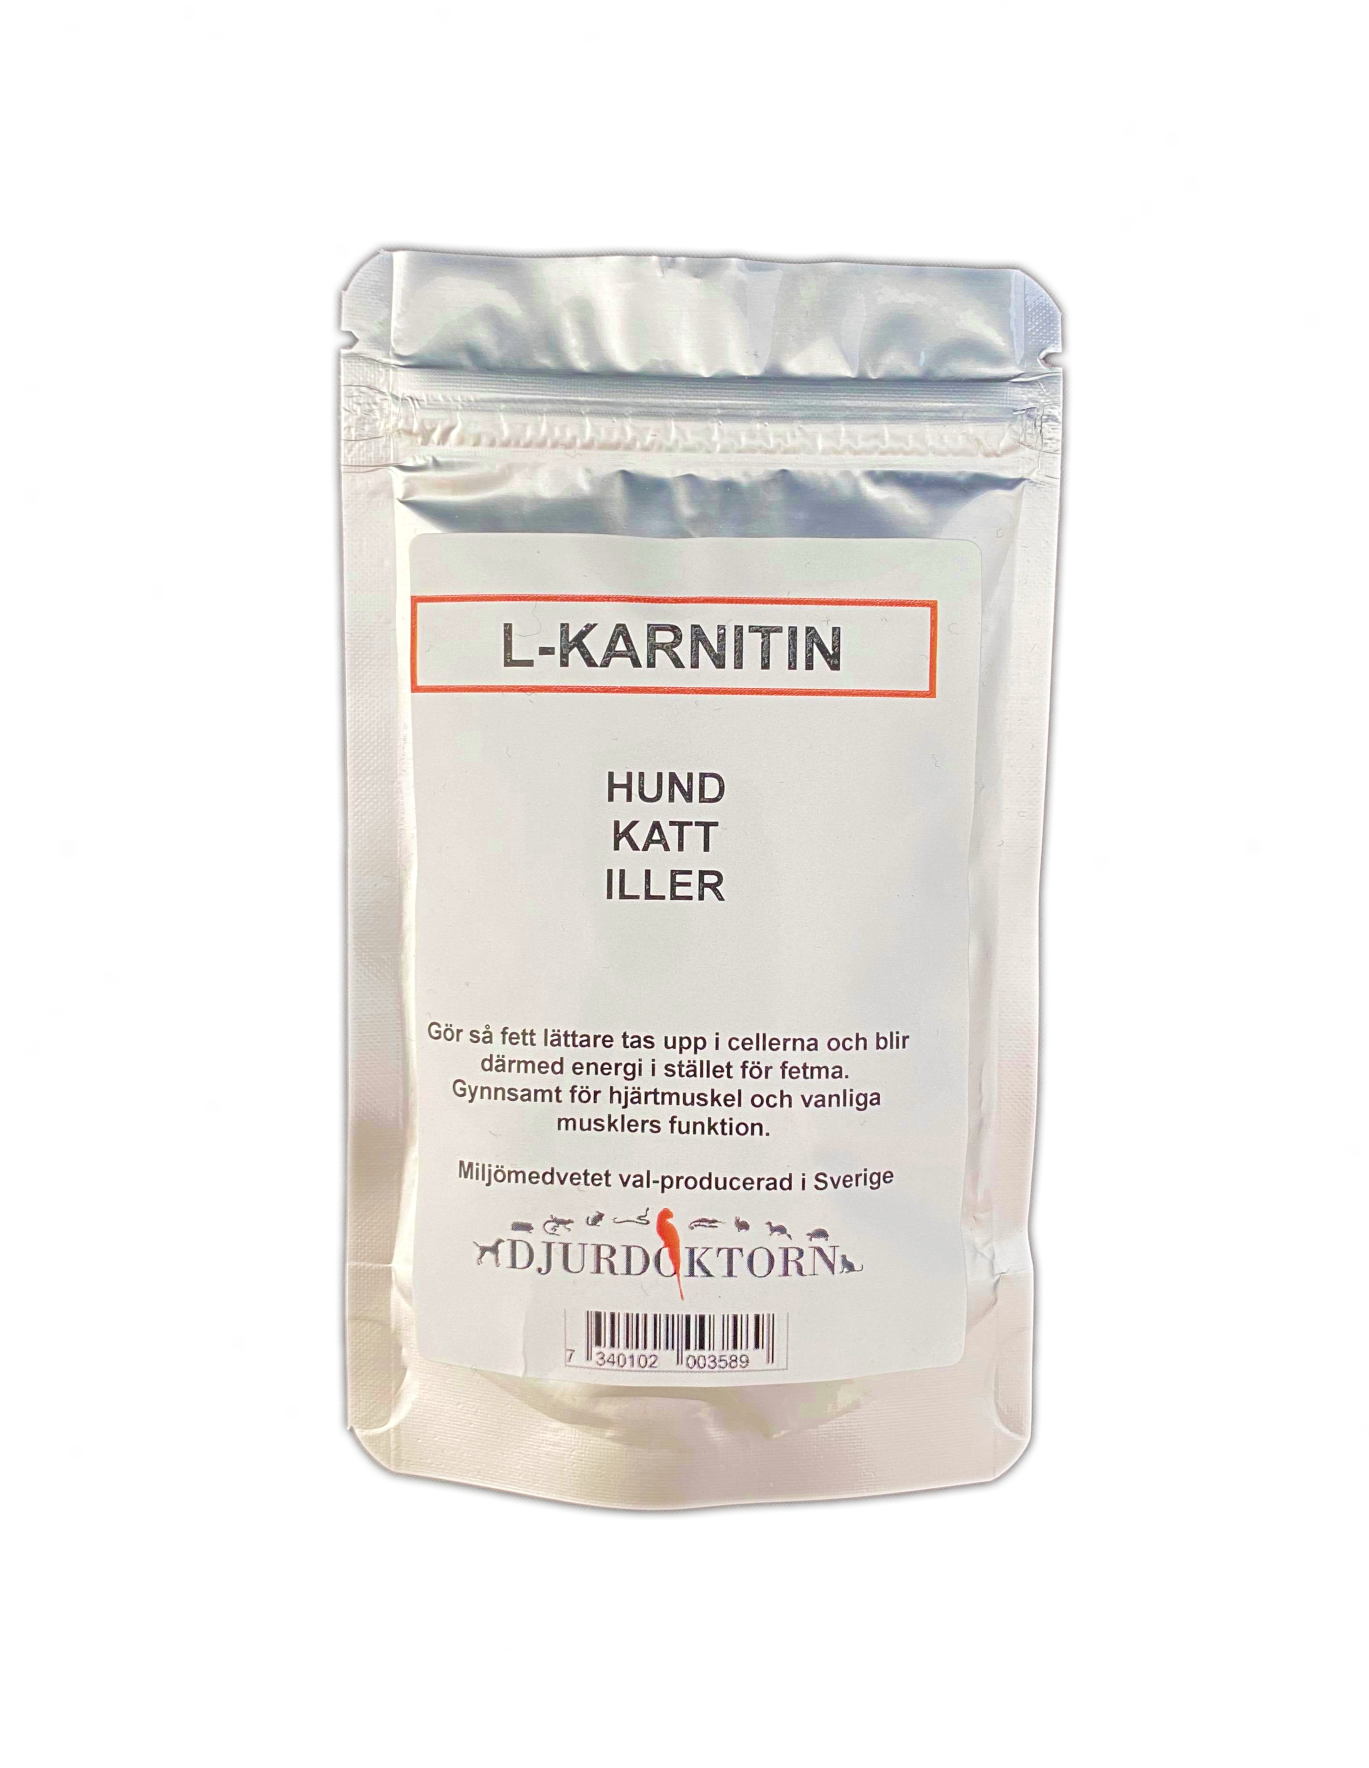 L-Karnitin åt hund 50 g